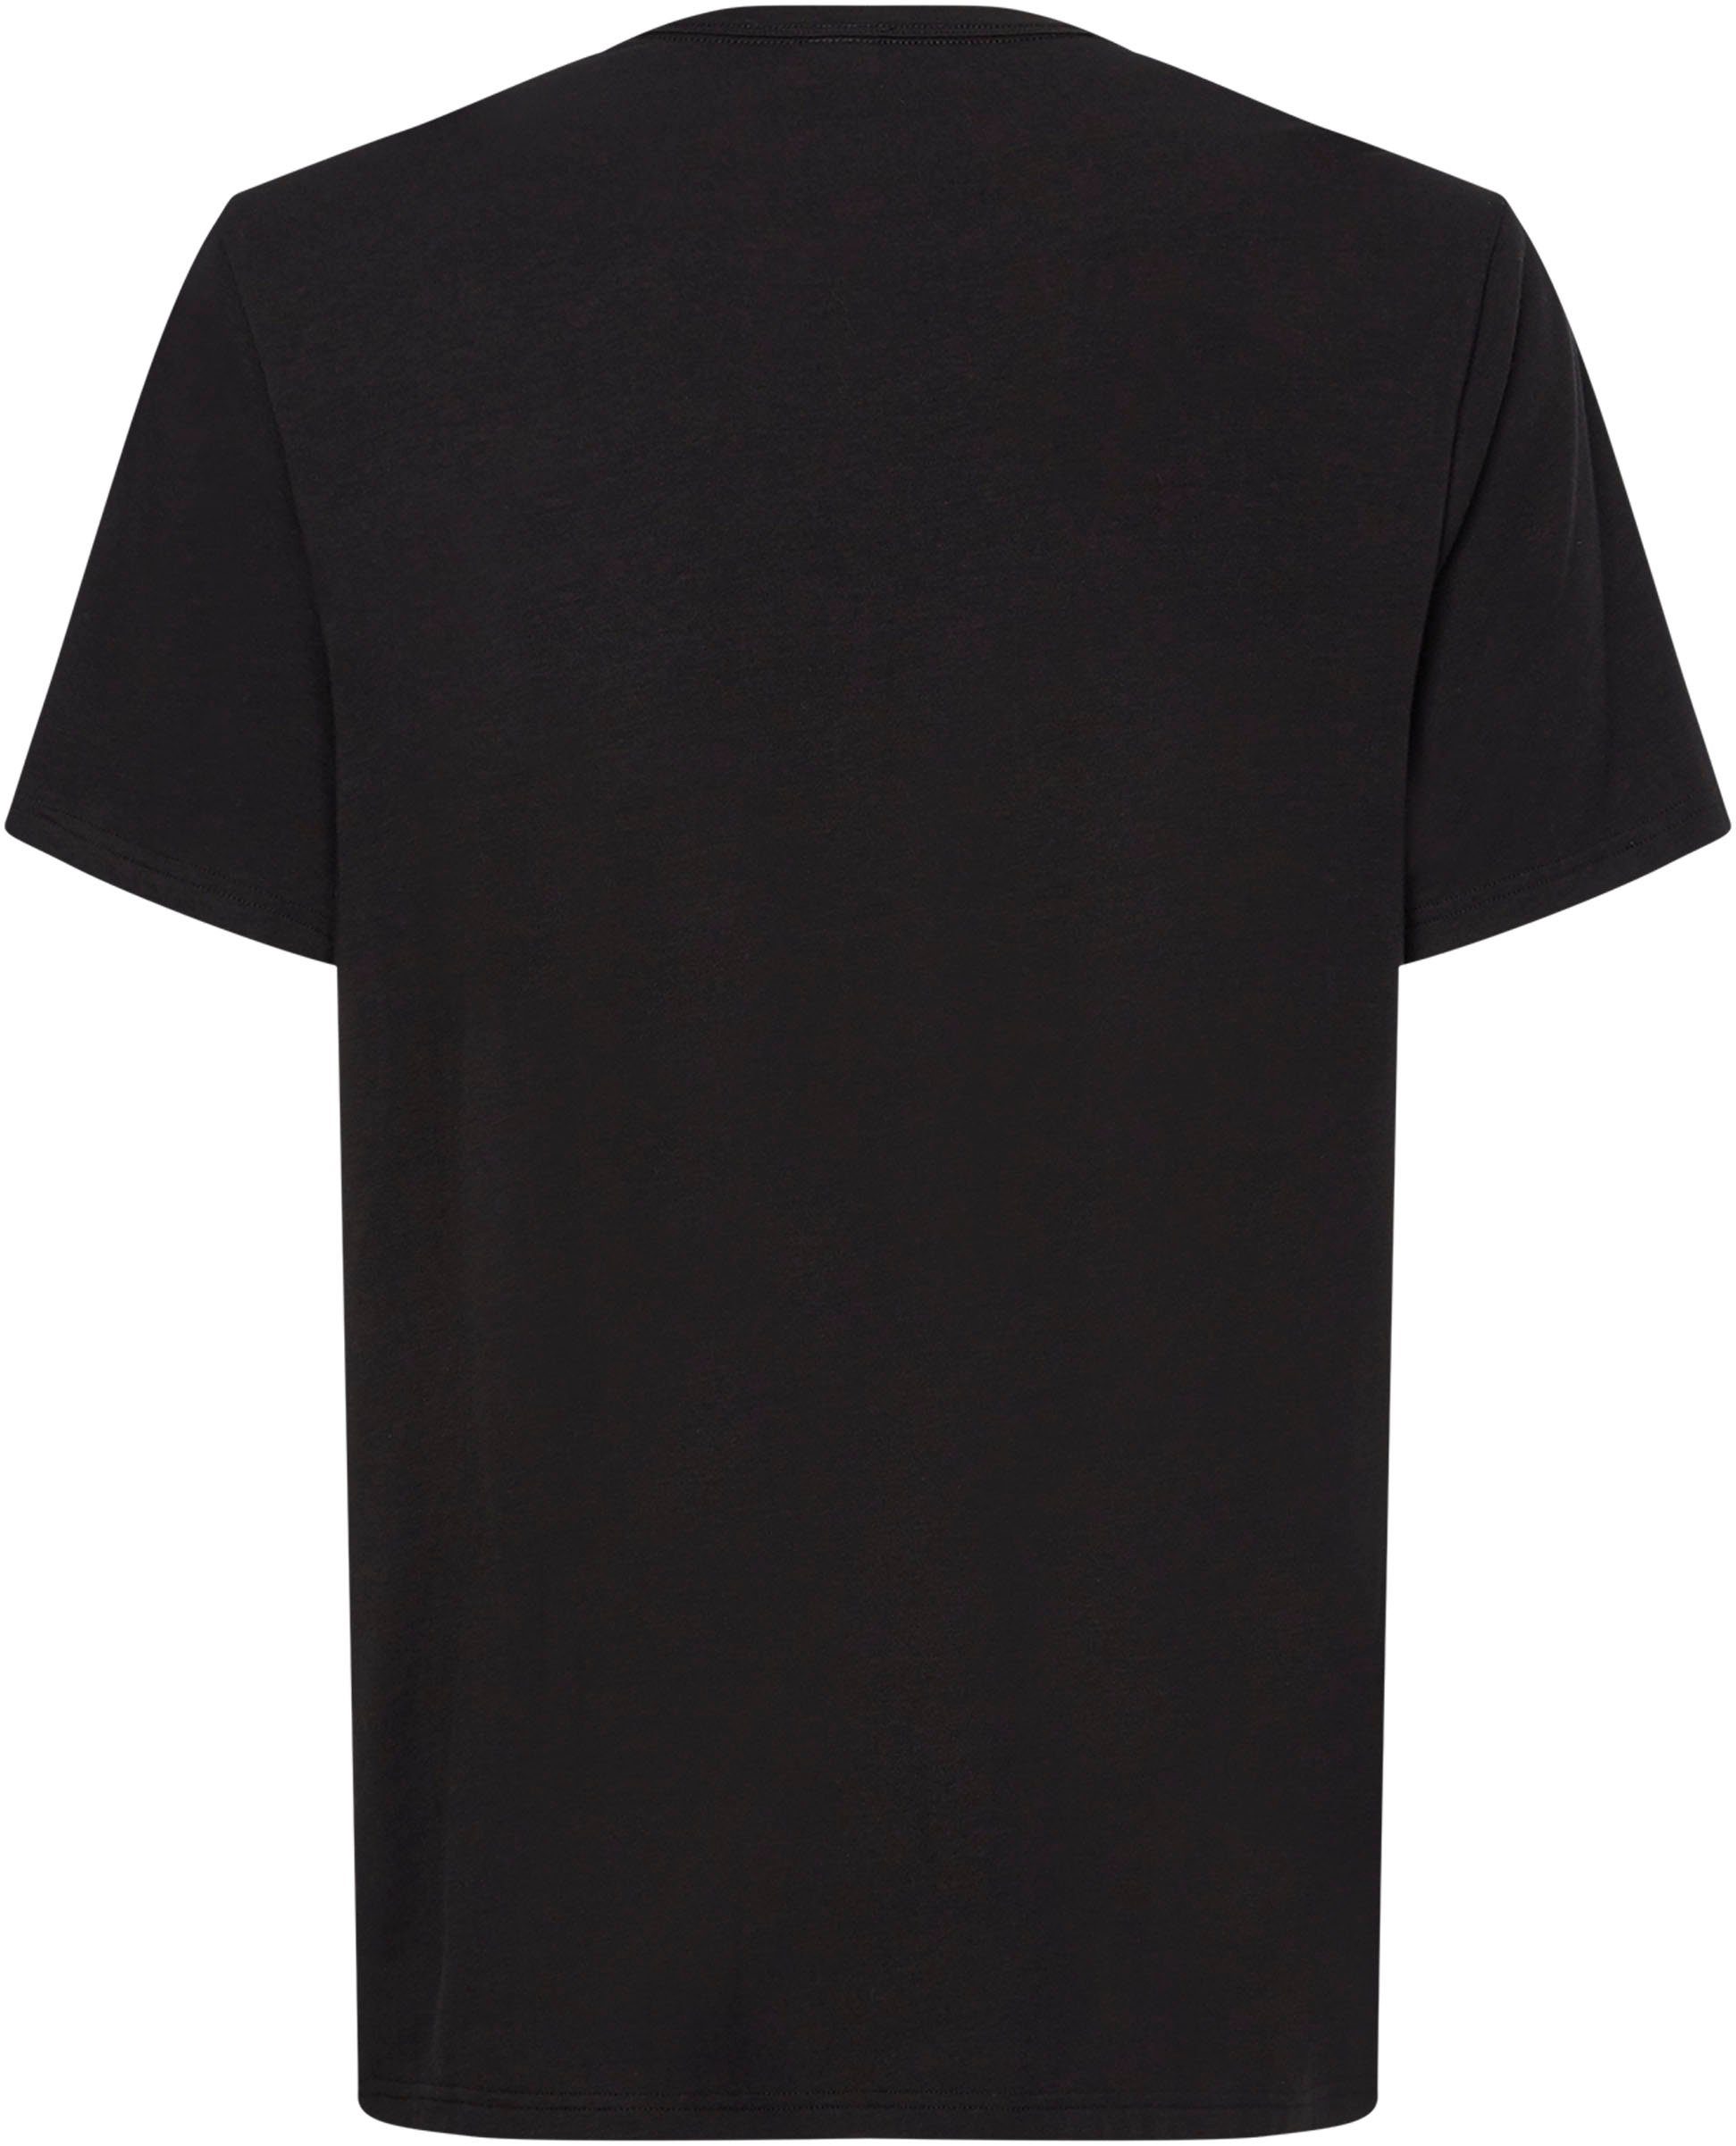 schwarz T-Shirt Calvin Klein Druck mit Logo Underwear